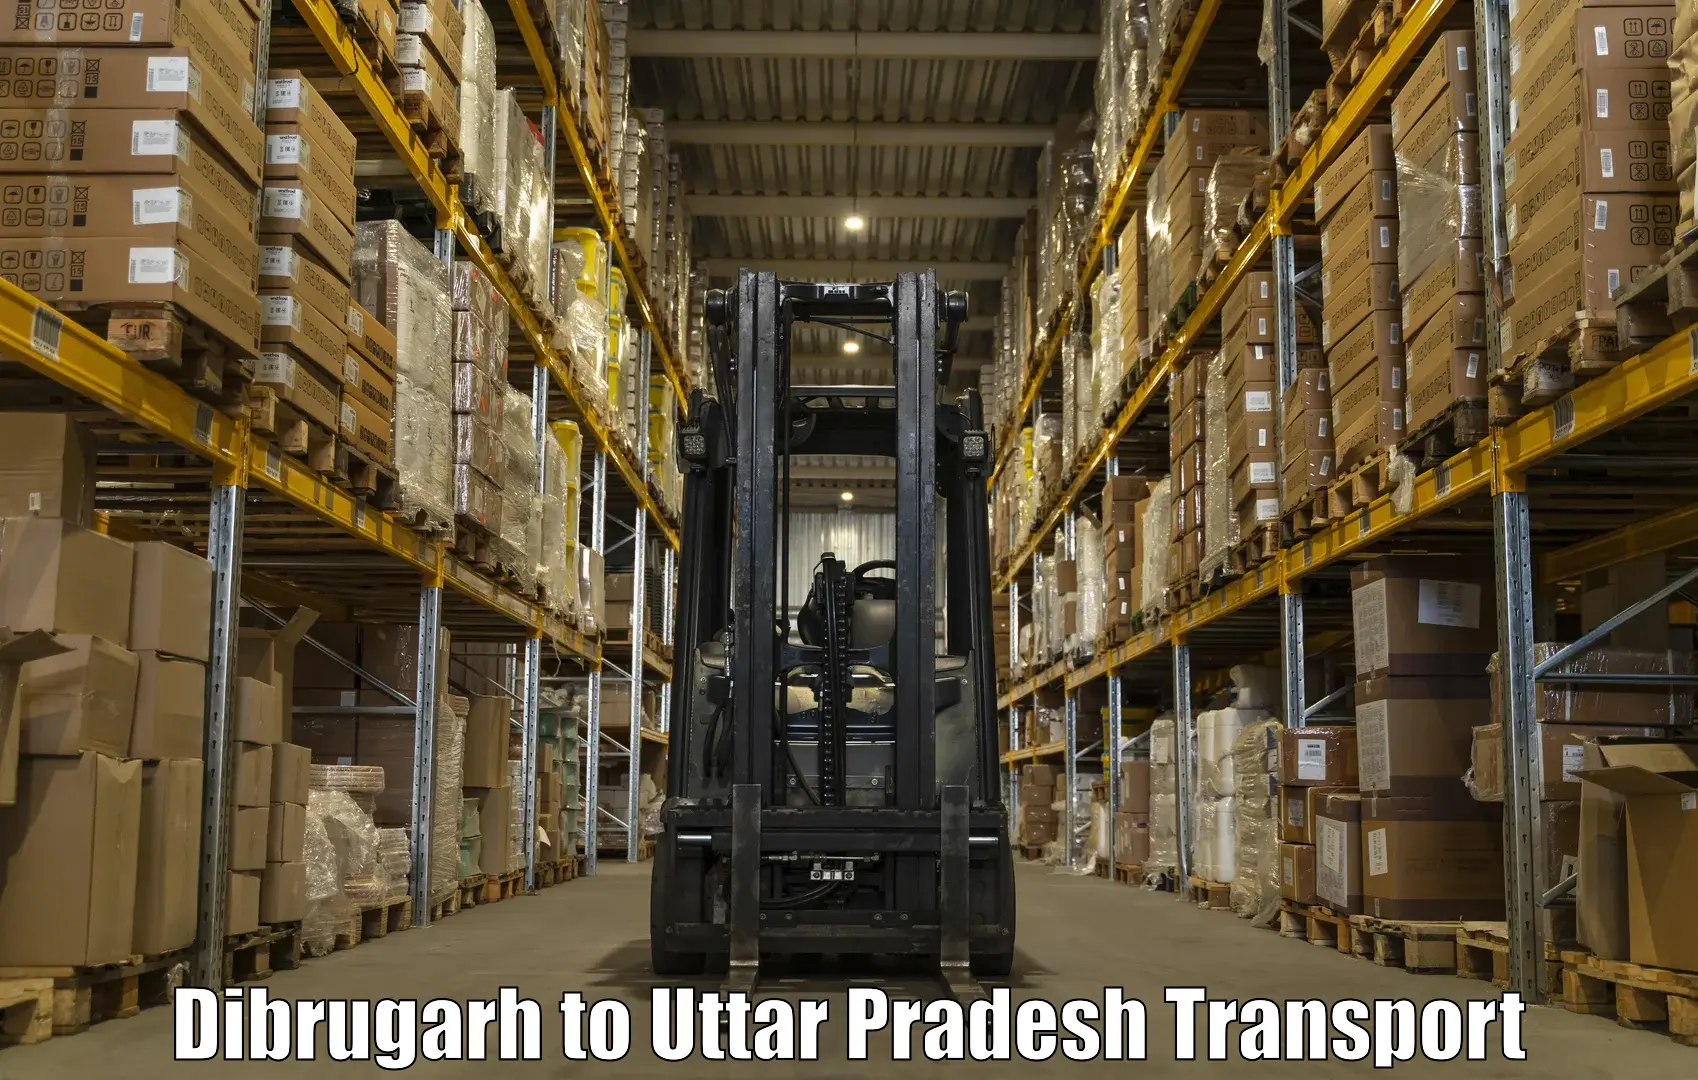 Pick up transport service Dibrugarh to IIT Varanasi